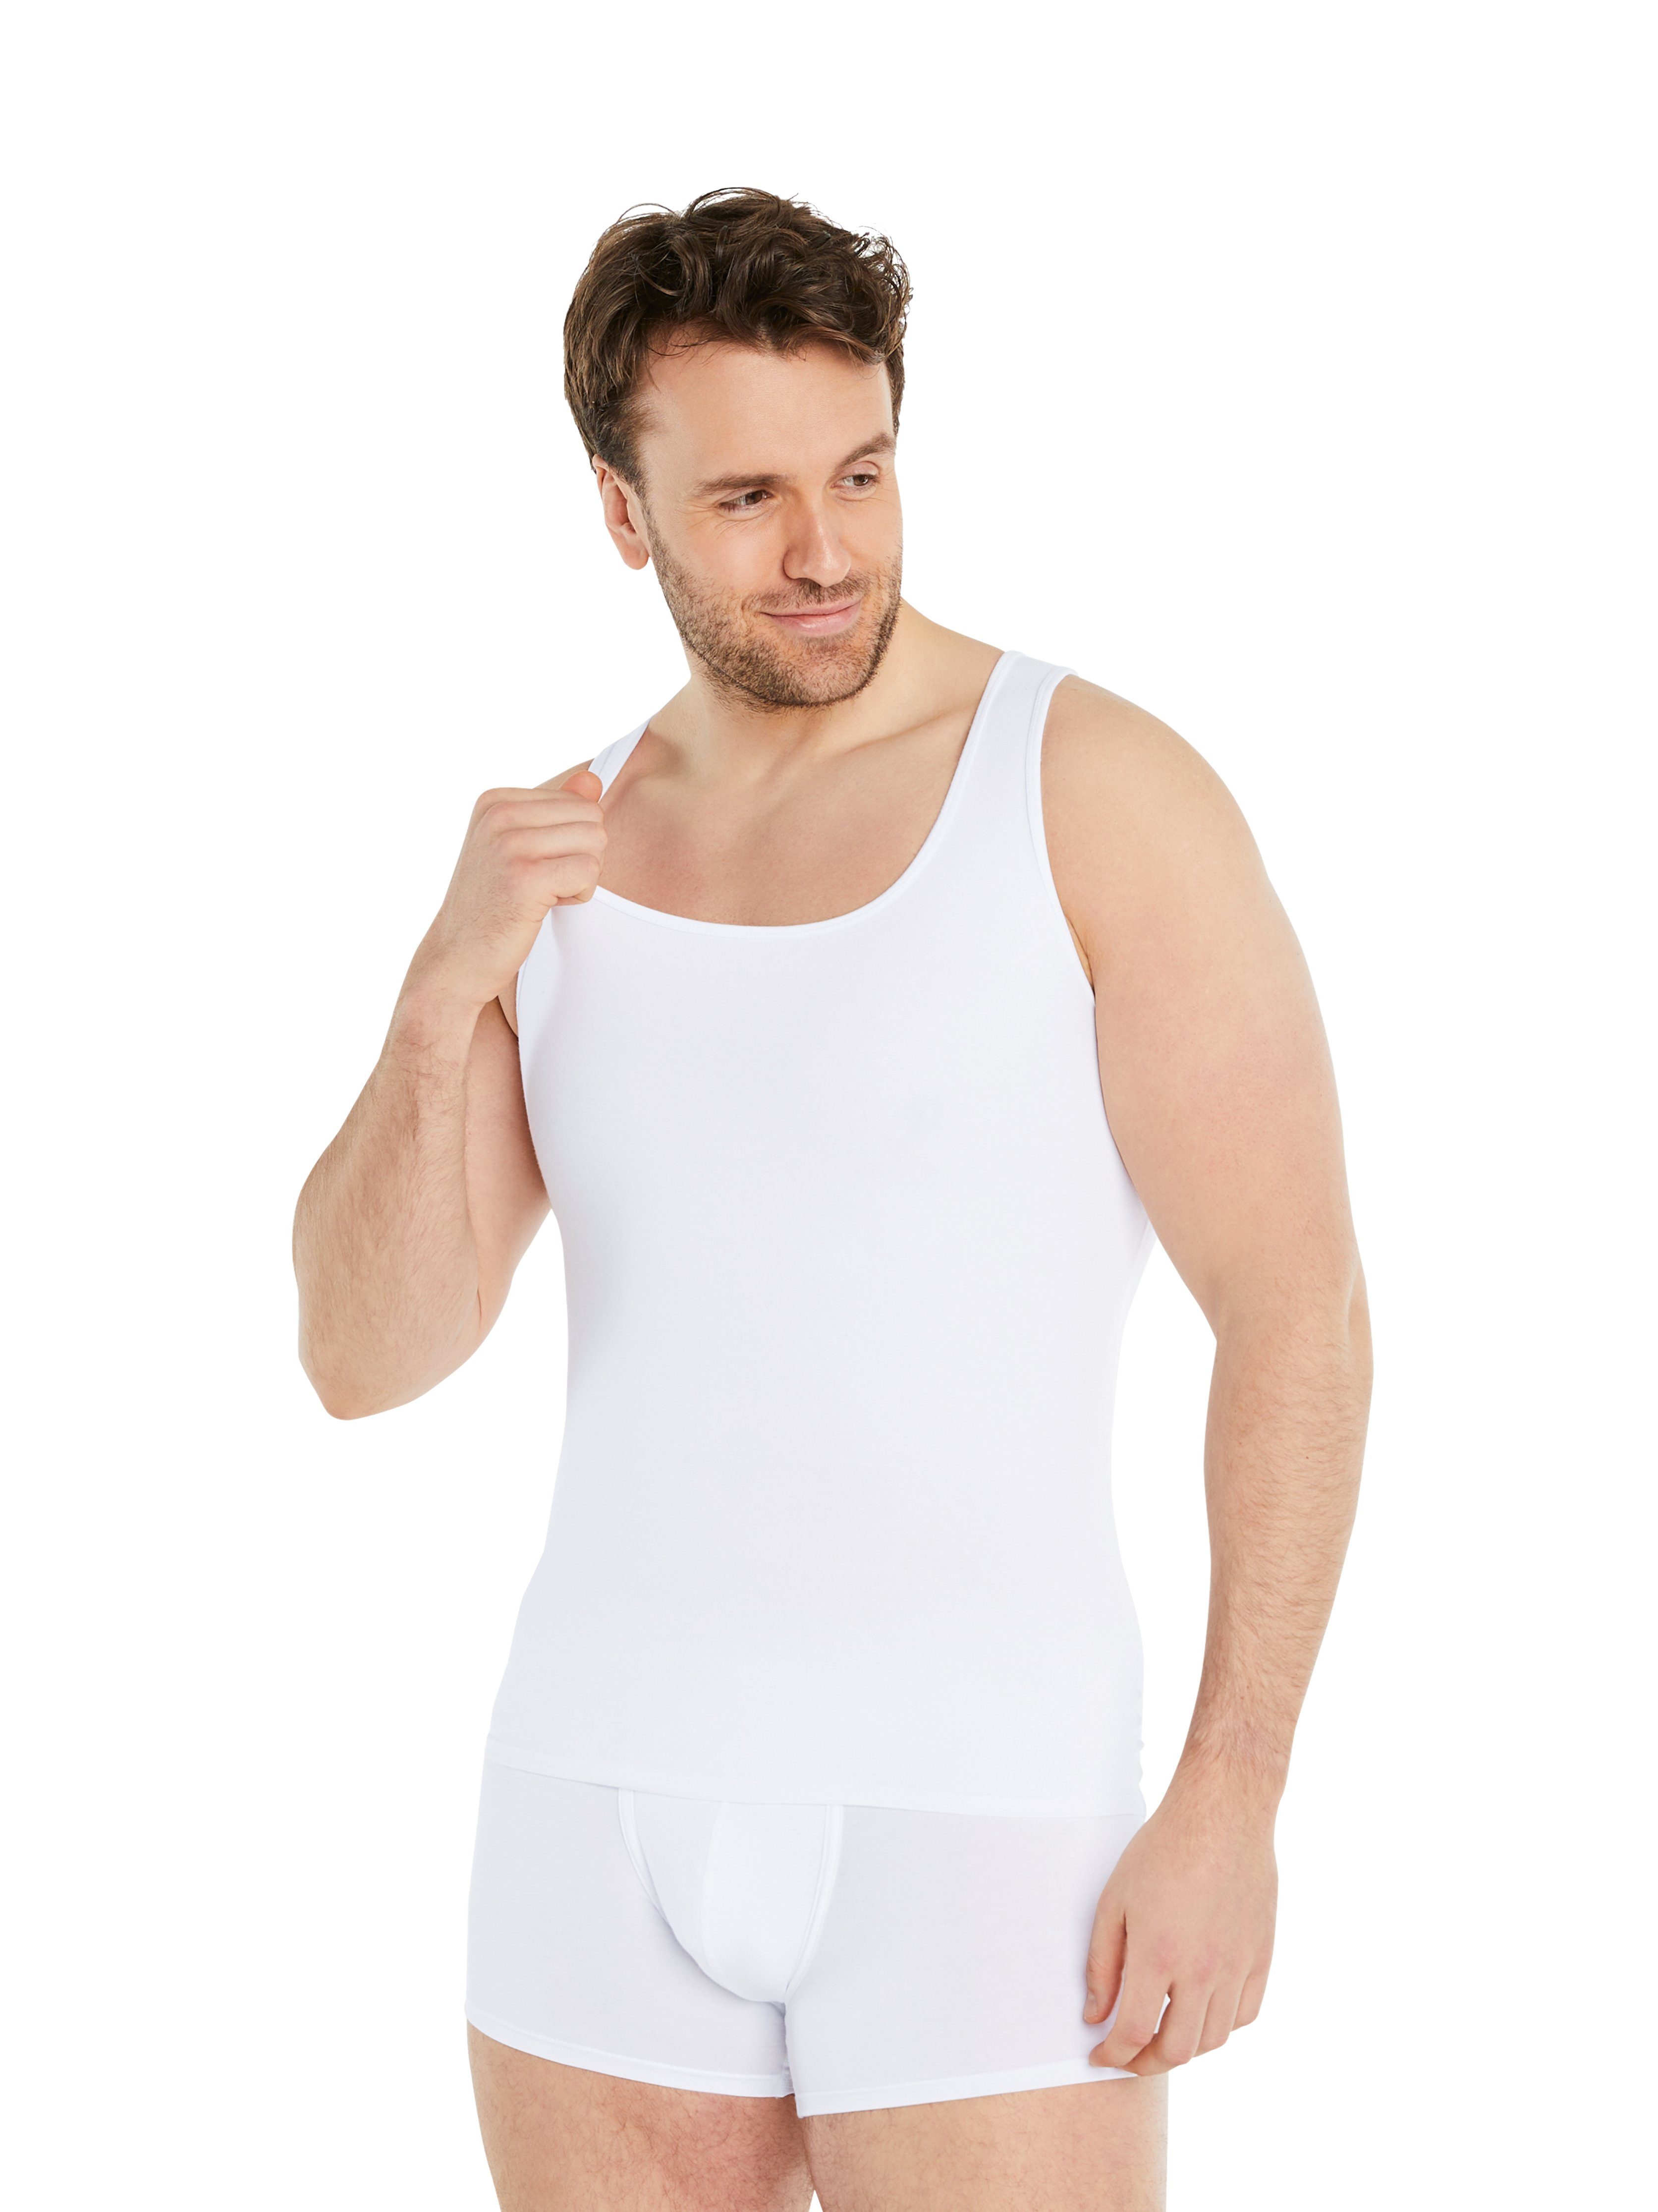 FINN Design Shapinghemd Shapewear Kompressions-Unterhemd Ärmellos Herren extra starke Kompression, eine Kleidergröße weniger Weiß